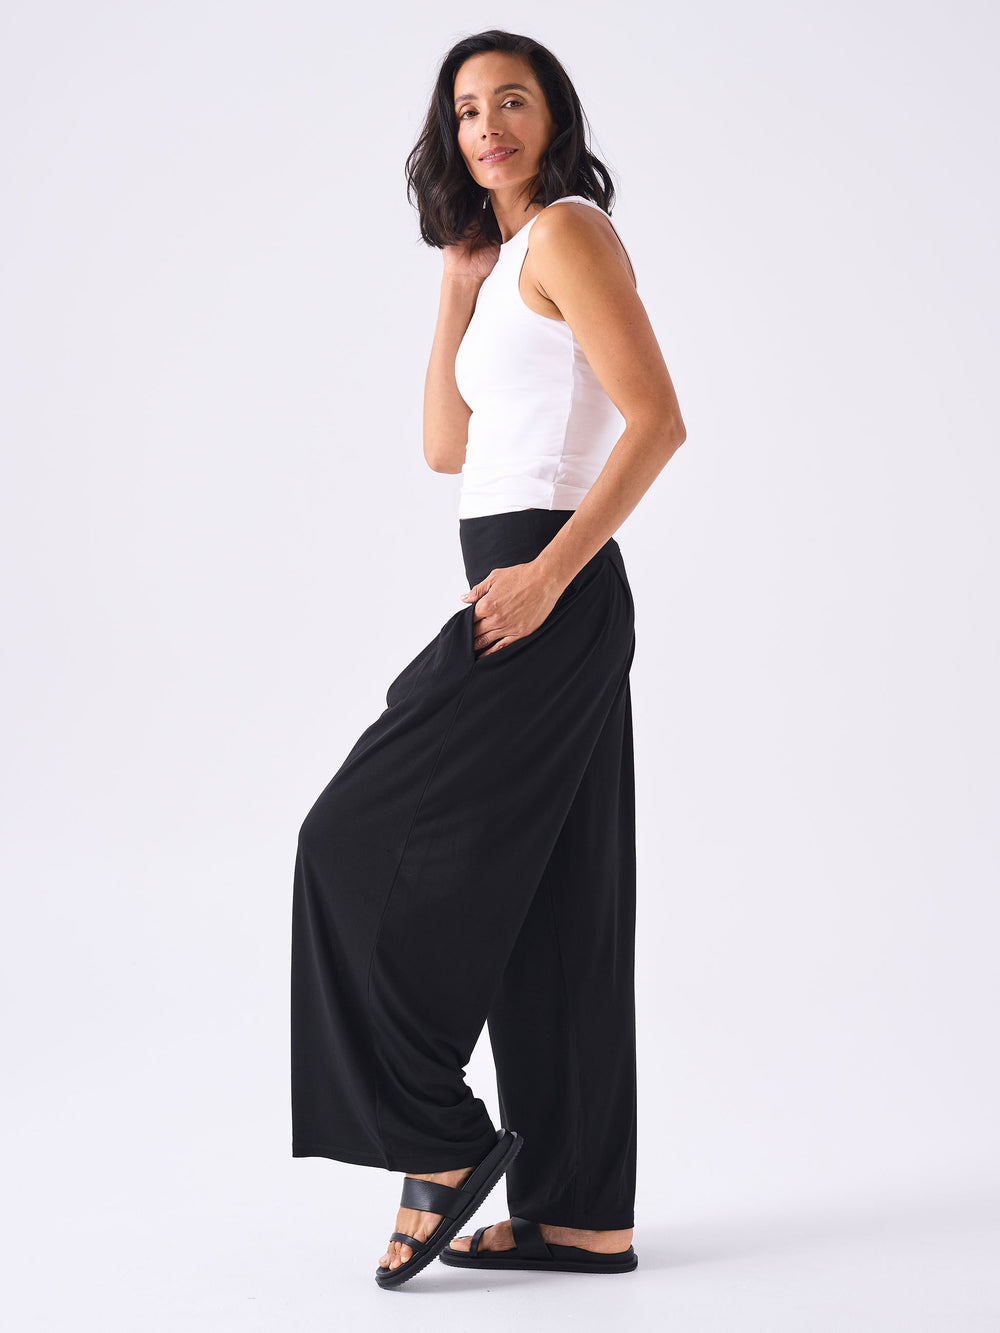 Bali Black Pants - Shop Women's Black Pants